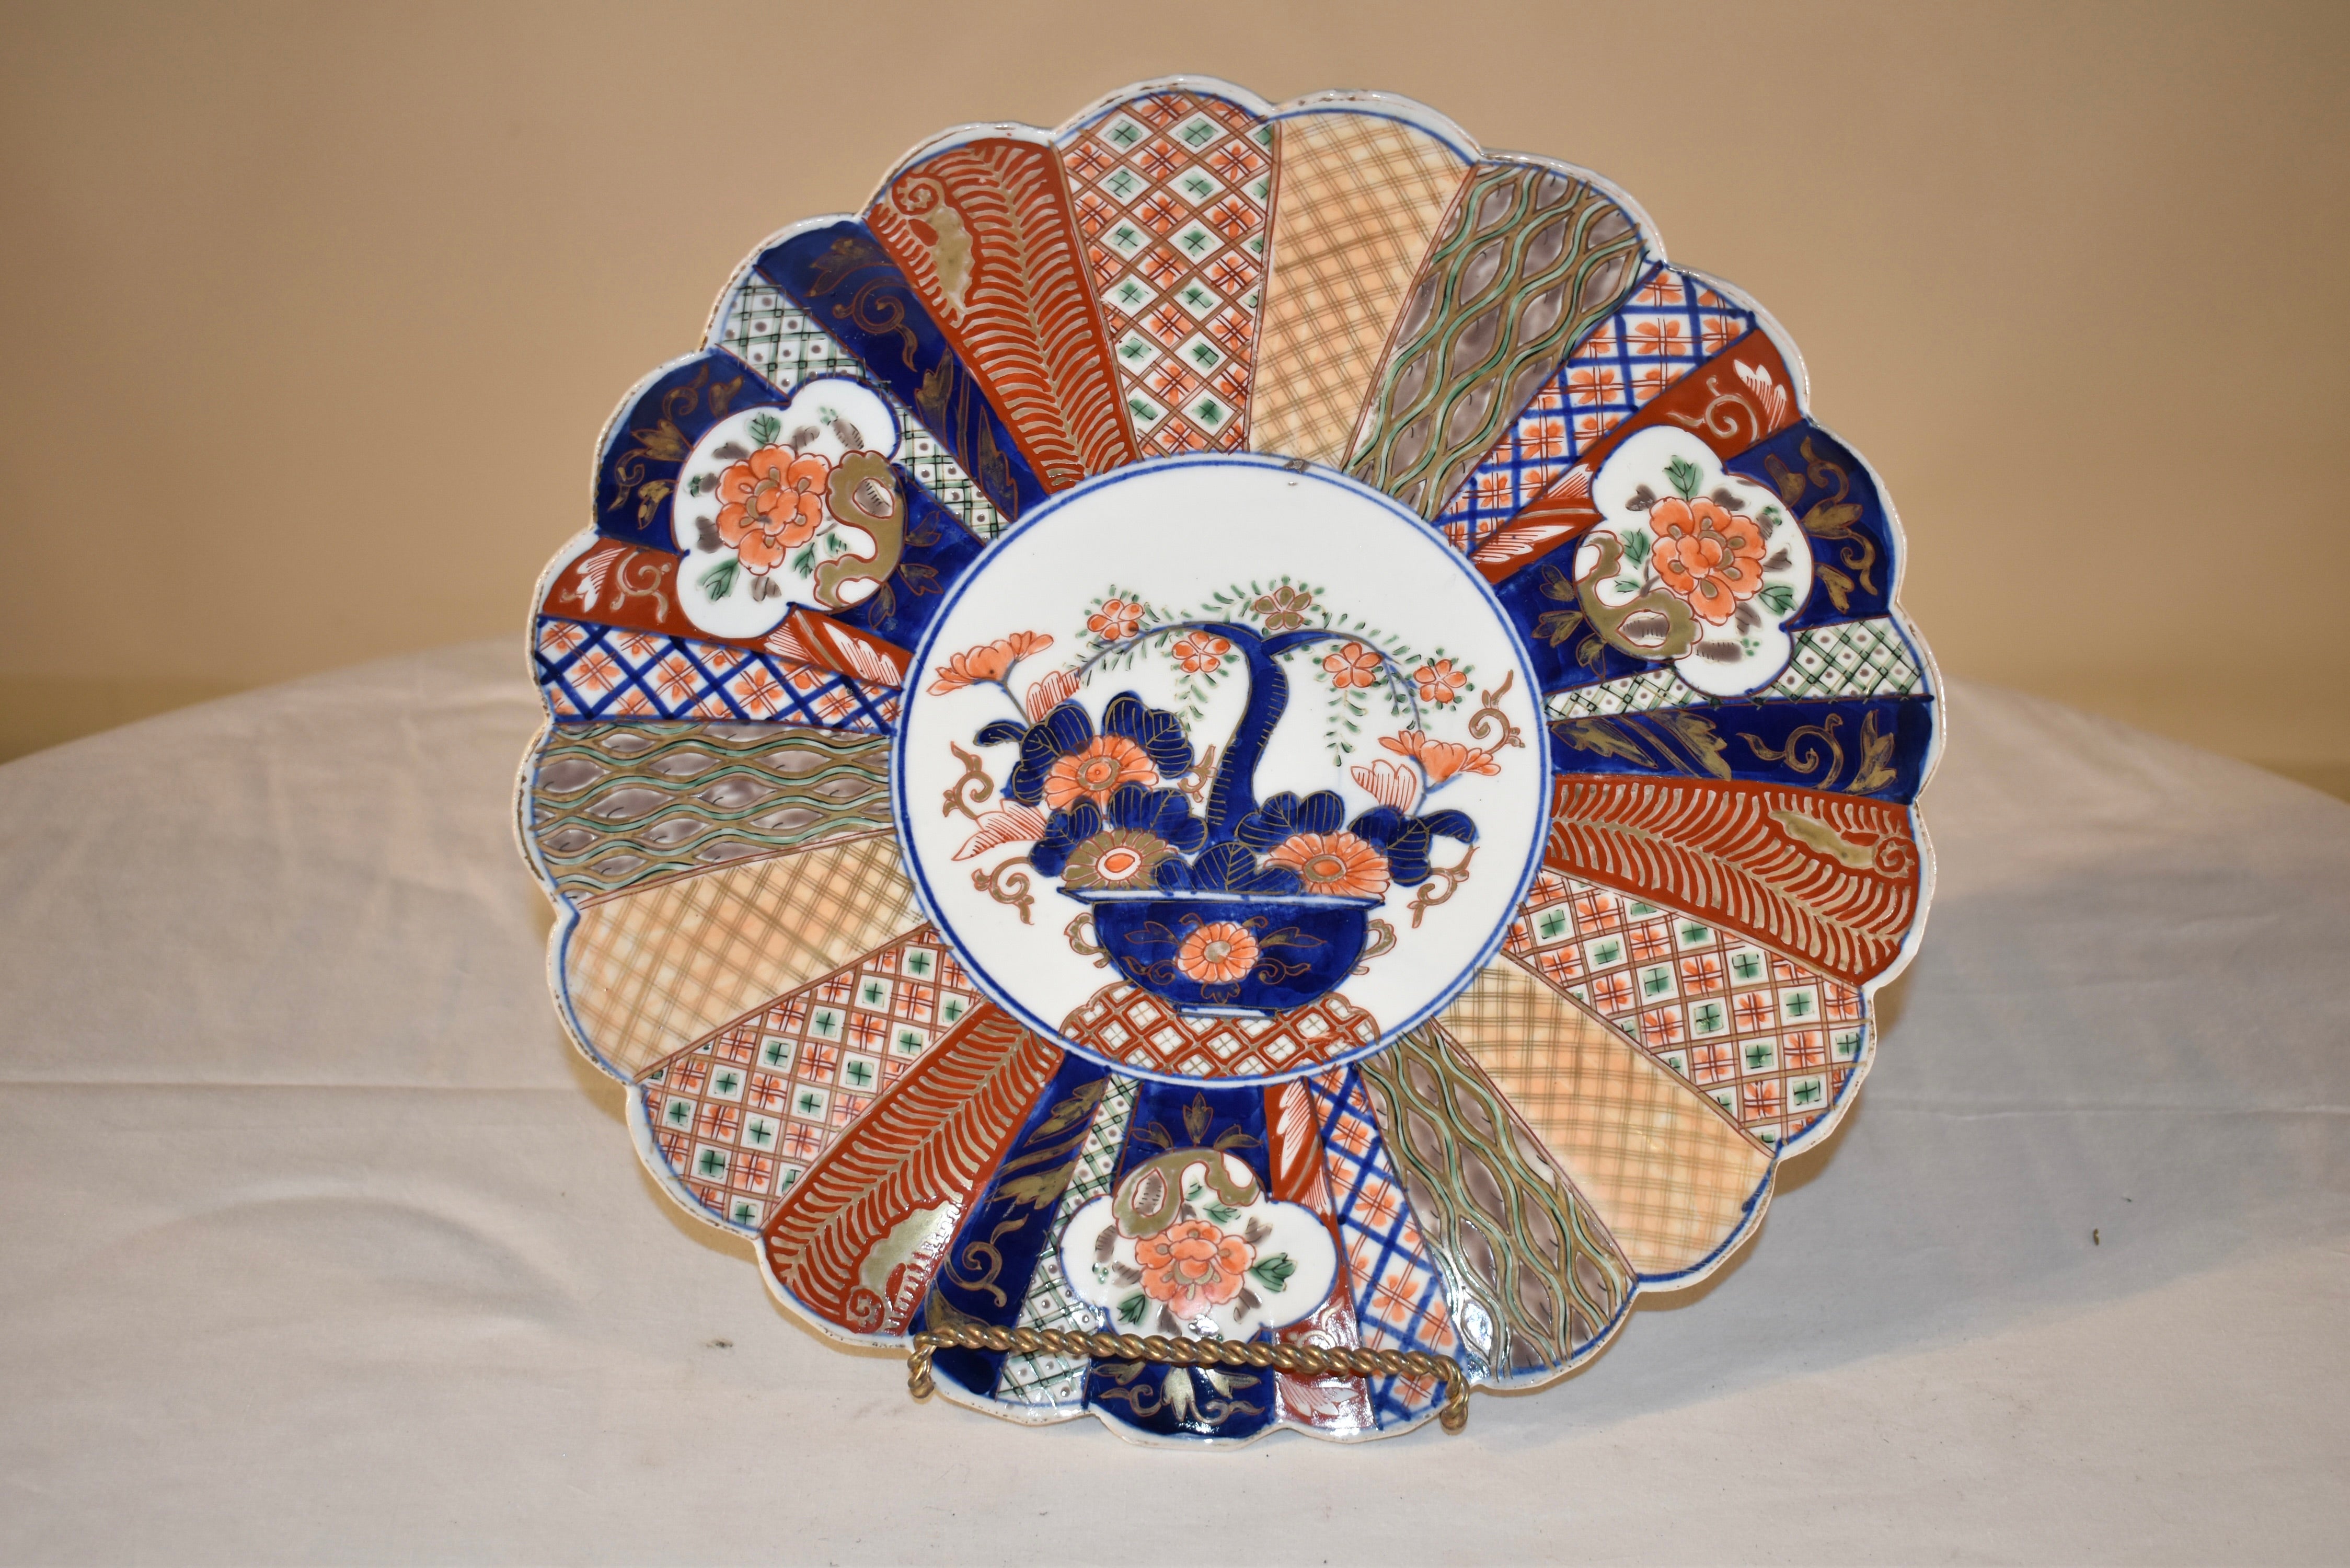 Imari-Ladegerät aus dem 19. Jahrhundert mit exquisit handgemalten Mustern in schönen Farben. In der Mitte befindet sich ein Medaillon, das einen Jadebaum darzustellen scheint, der von Blumen umgeben ist. Das zentrale Medaillon ist von einem